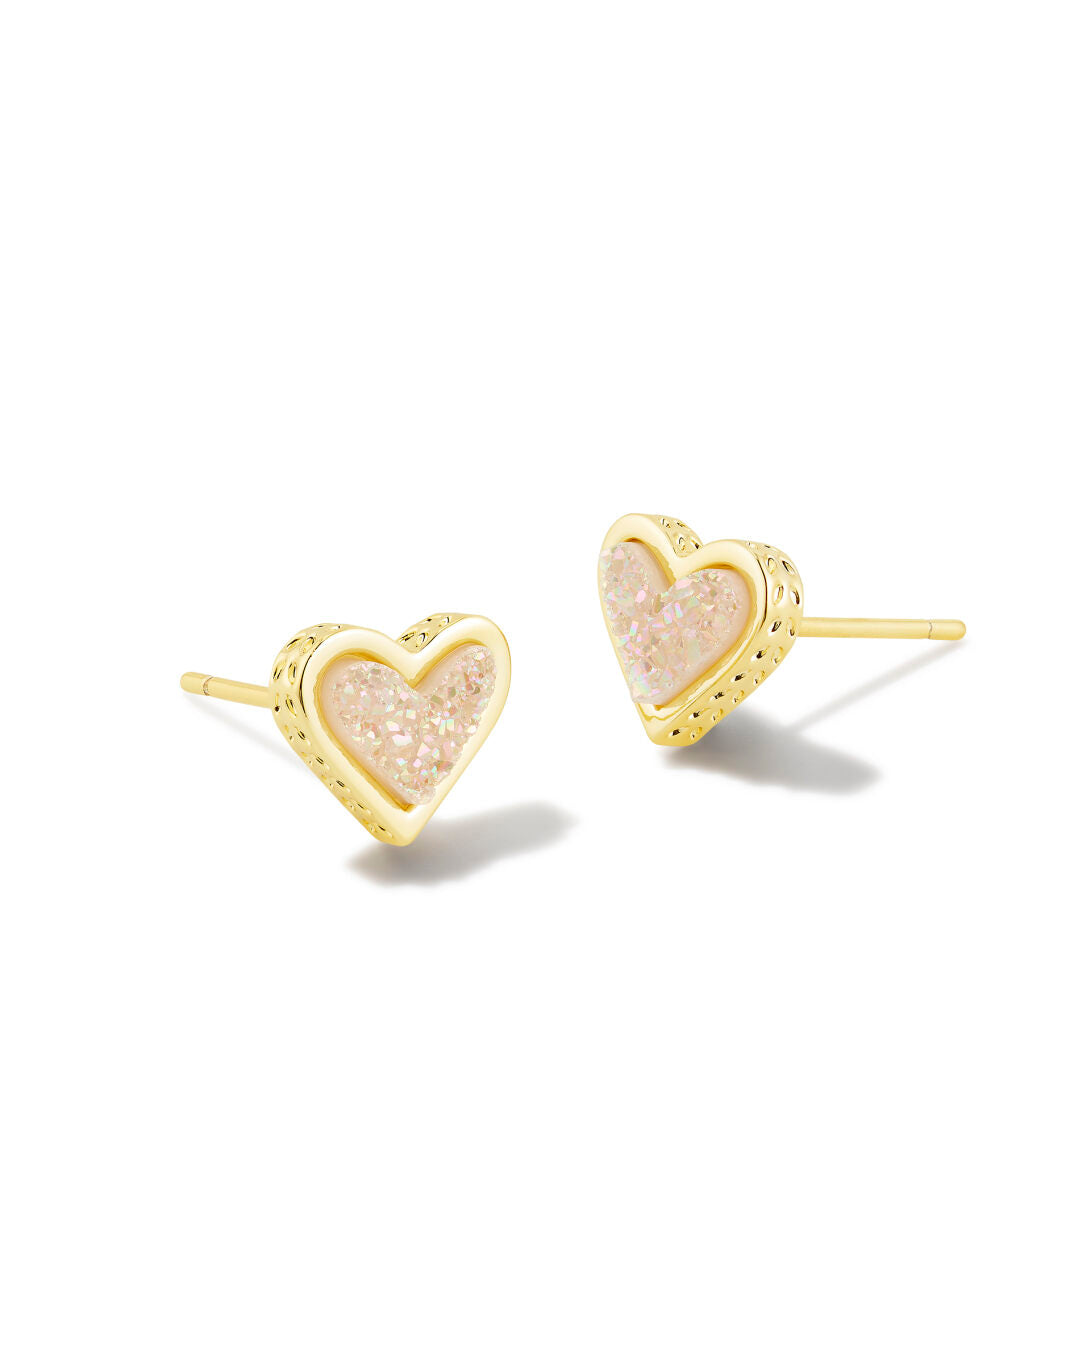 Framed Ari Heart Stud Earrings Gold Iridescent Drusy